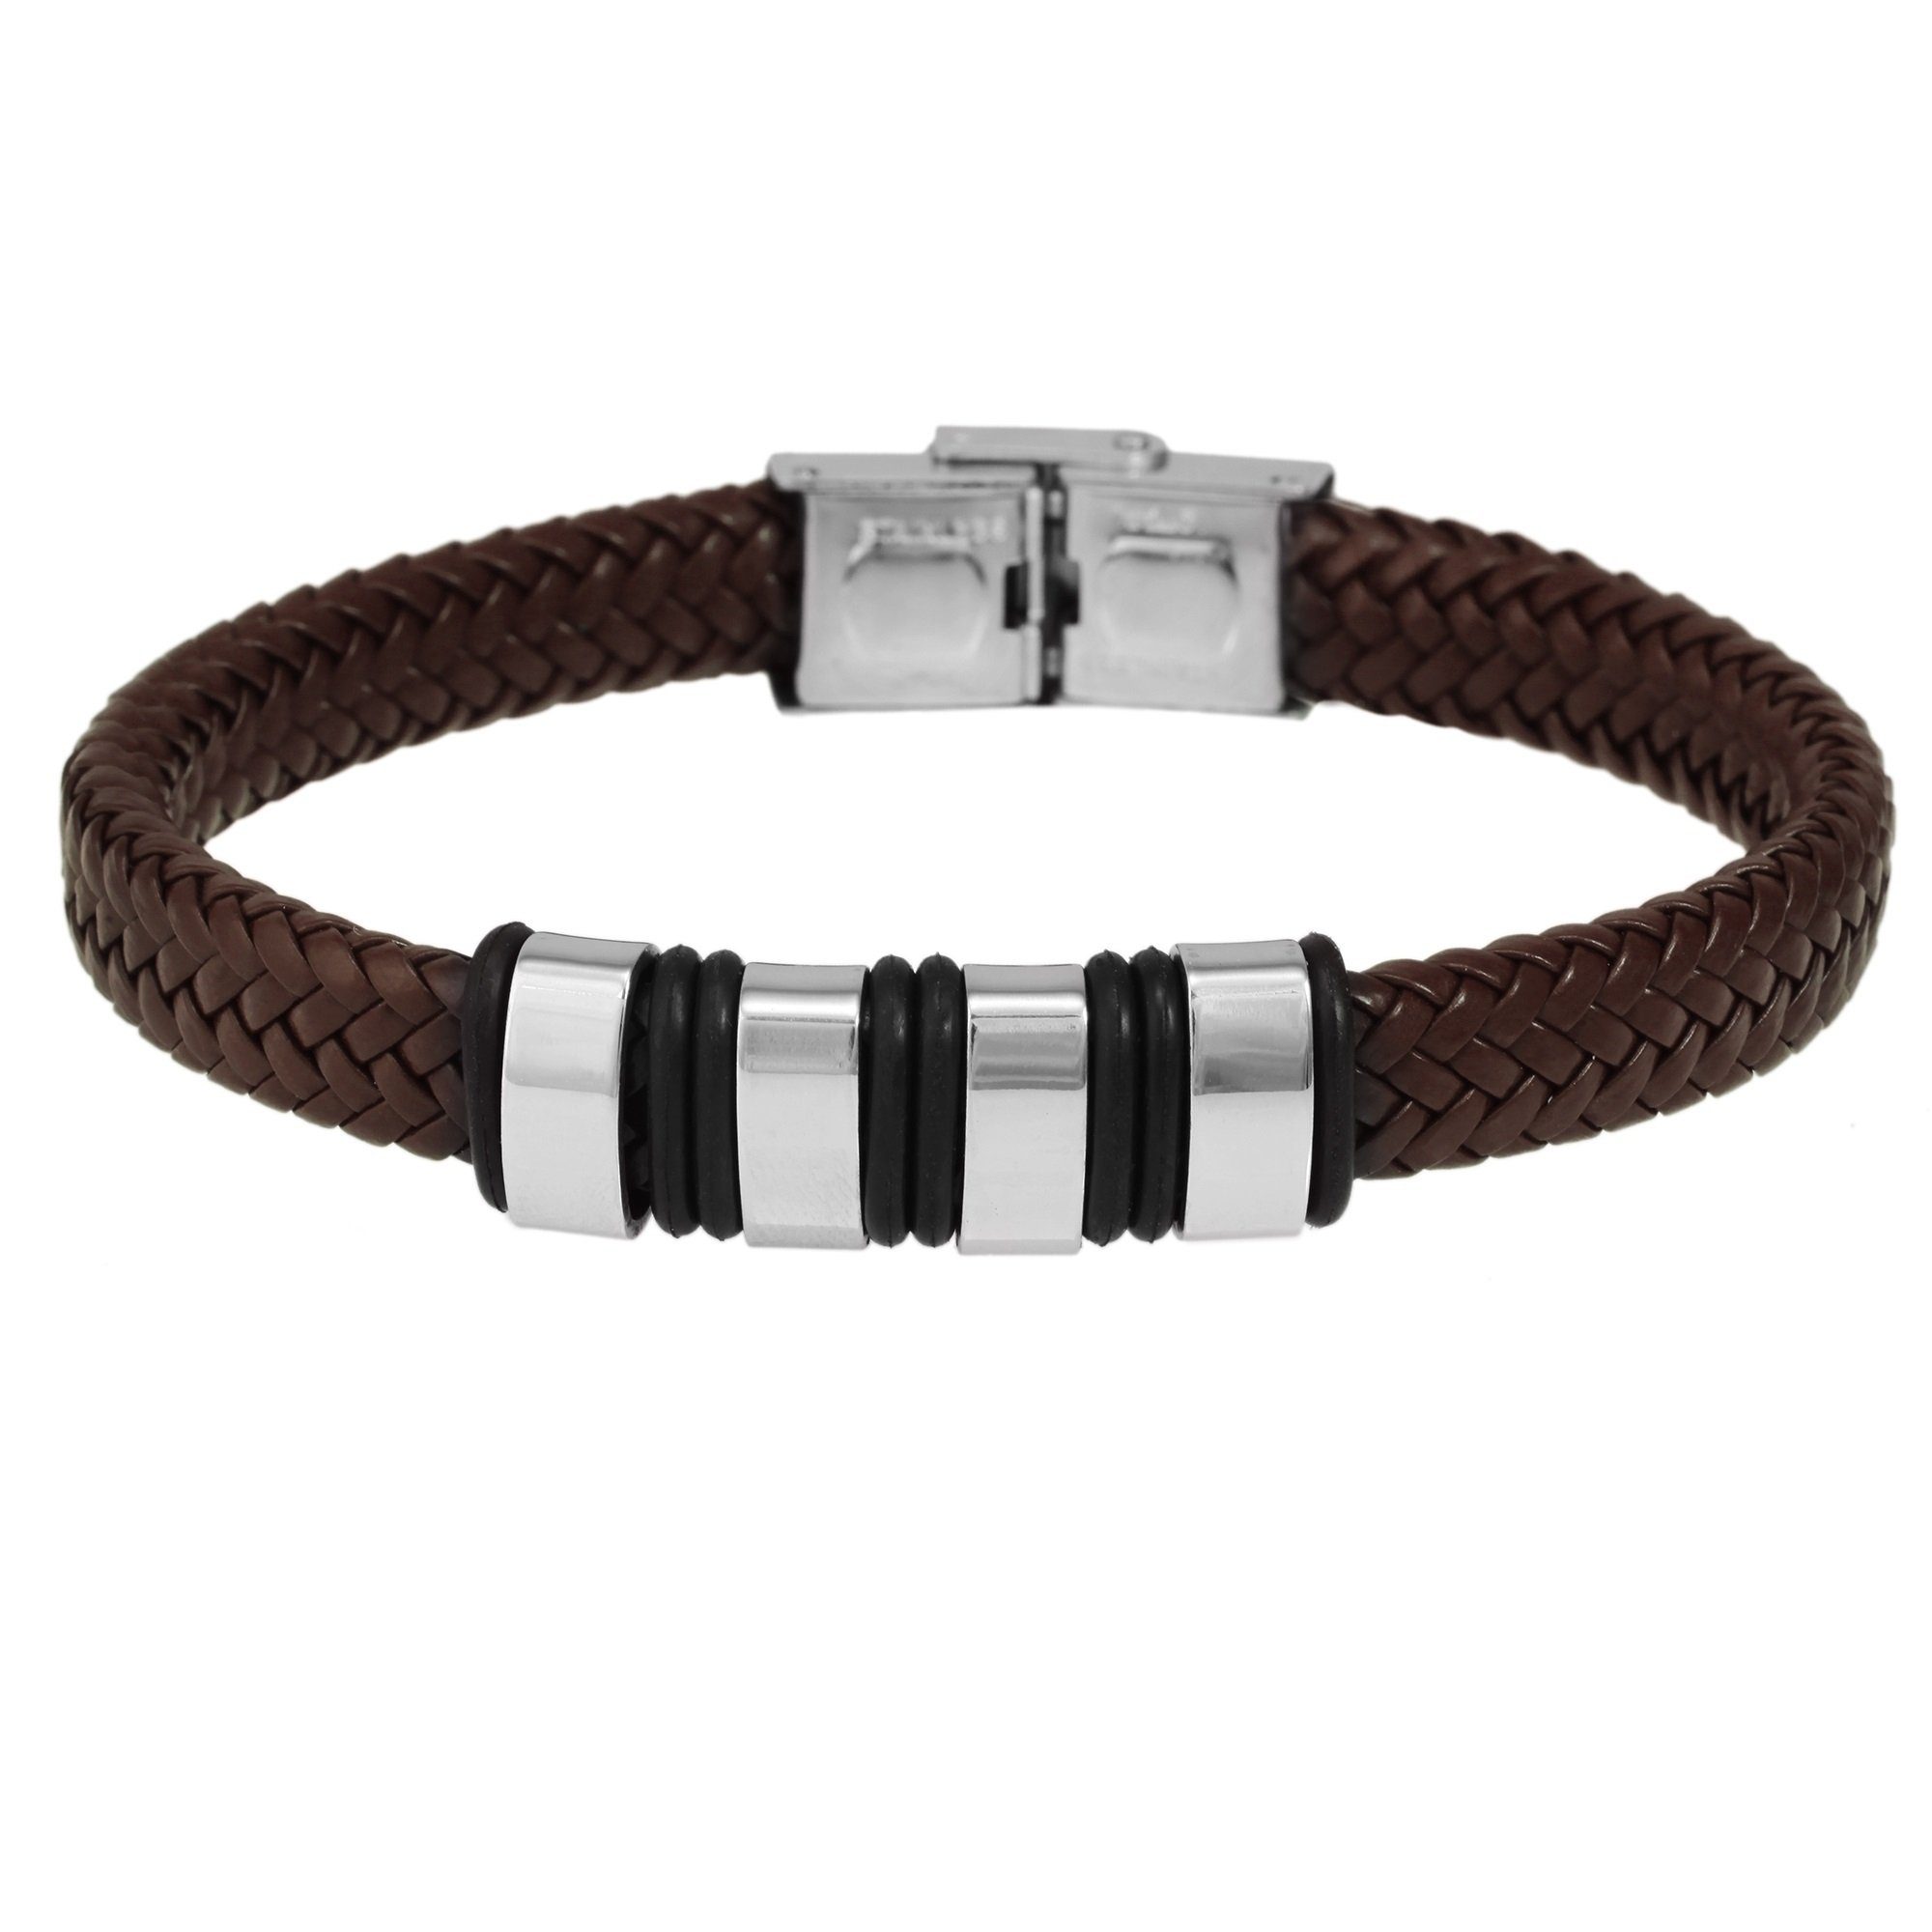 21 cm, Edelstahl aus gefertigt Armband aus Edelstahl Liebe Edelstahlarmband Mit Adelia´s